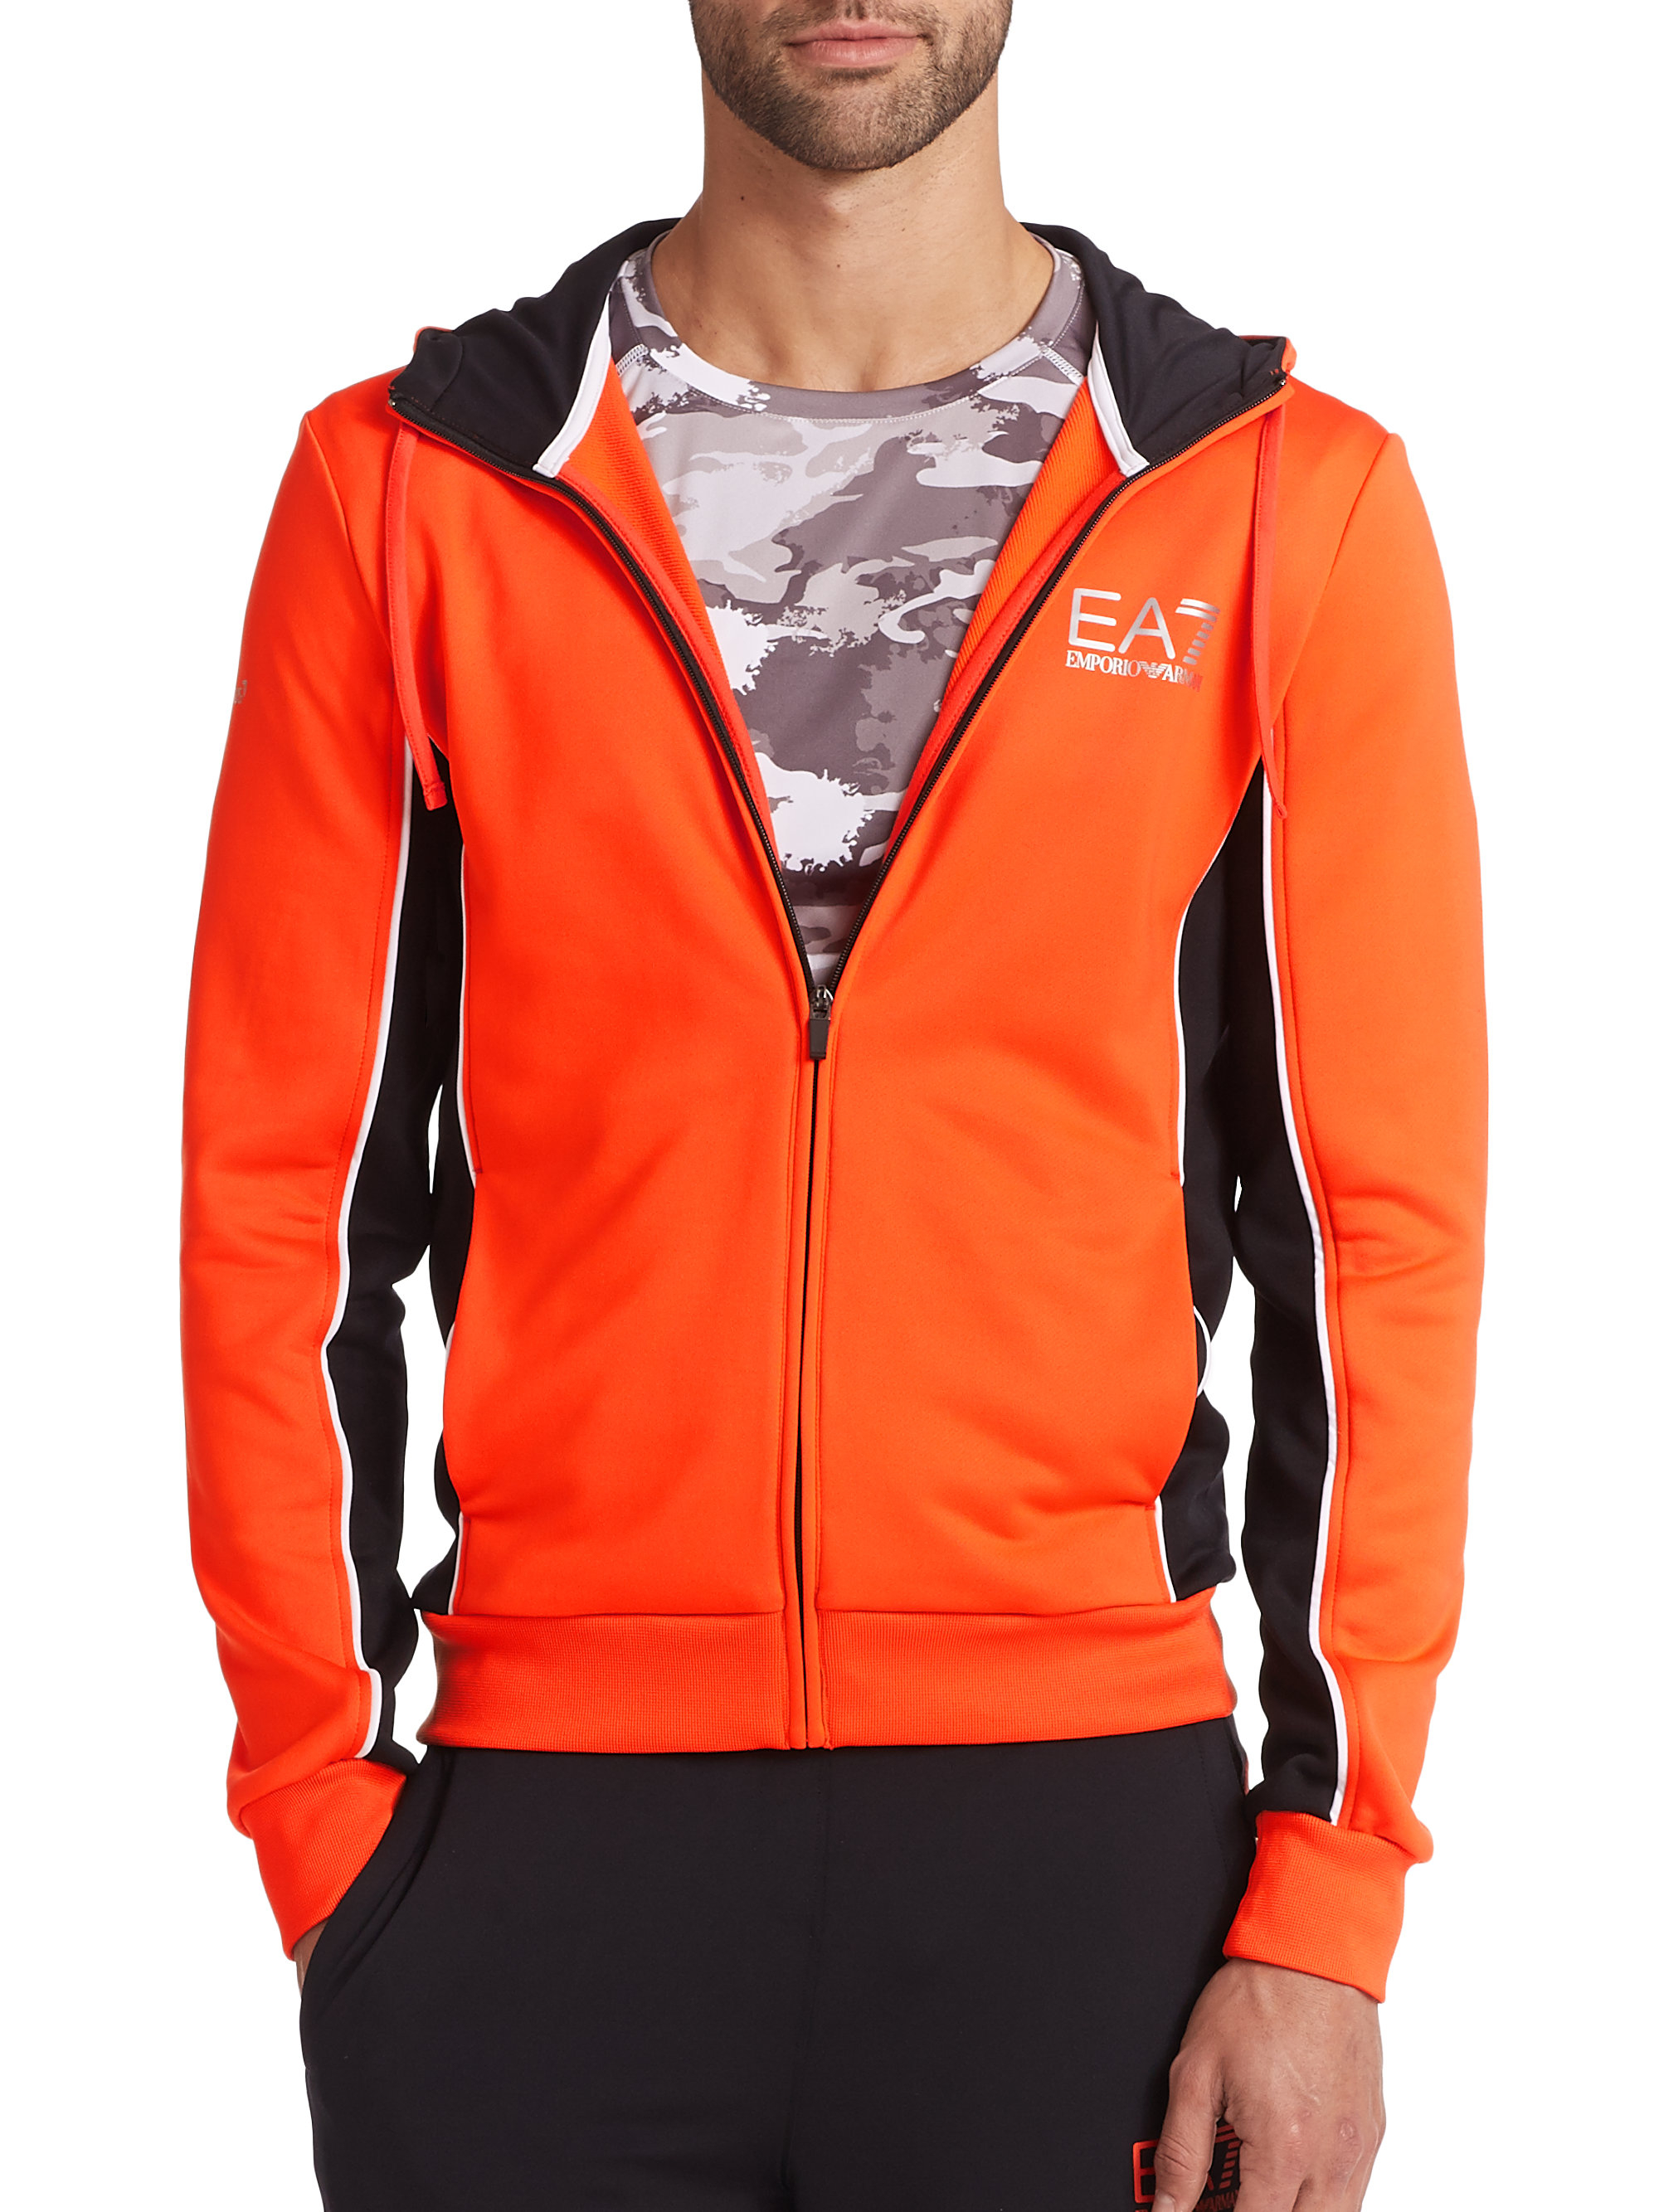 Emporio Armani Colorblock Zip-Front Hoodie in Orange for Men - Lyst